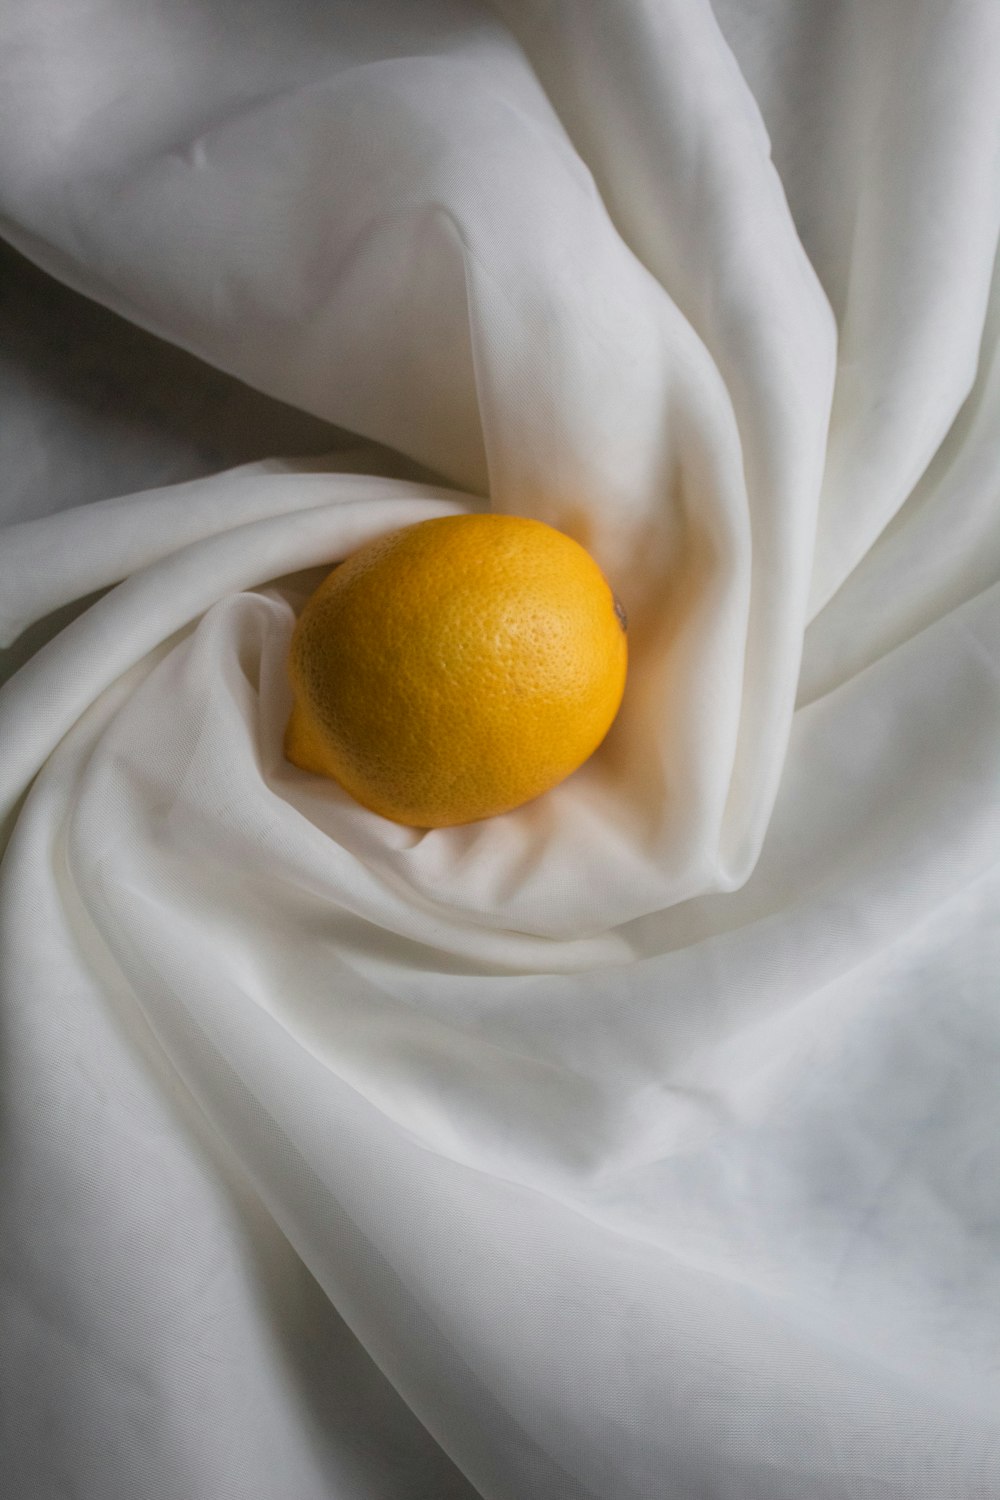 yellow lemon on white textile